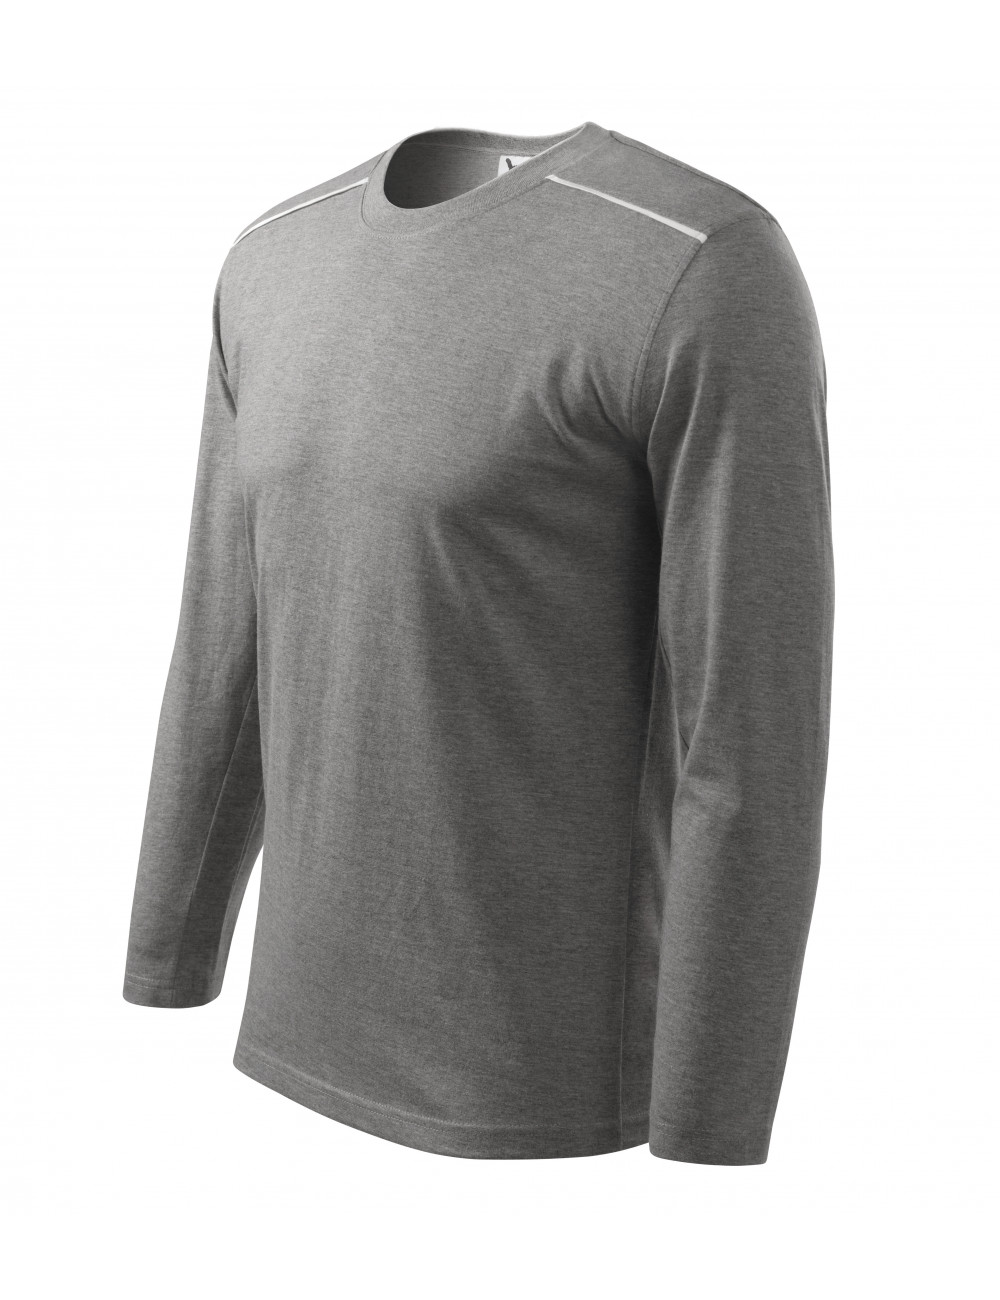 Unisex long sleeve t-shirt 112 dark gray melange Adler Malfini